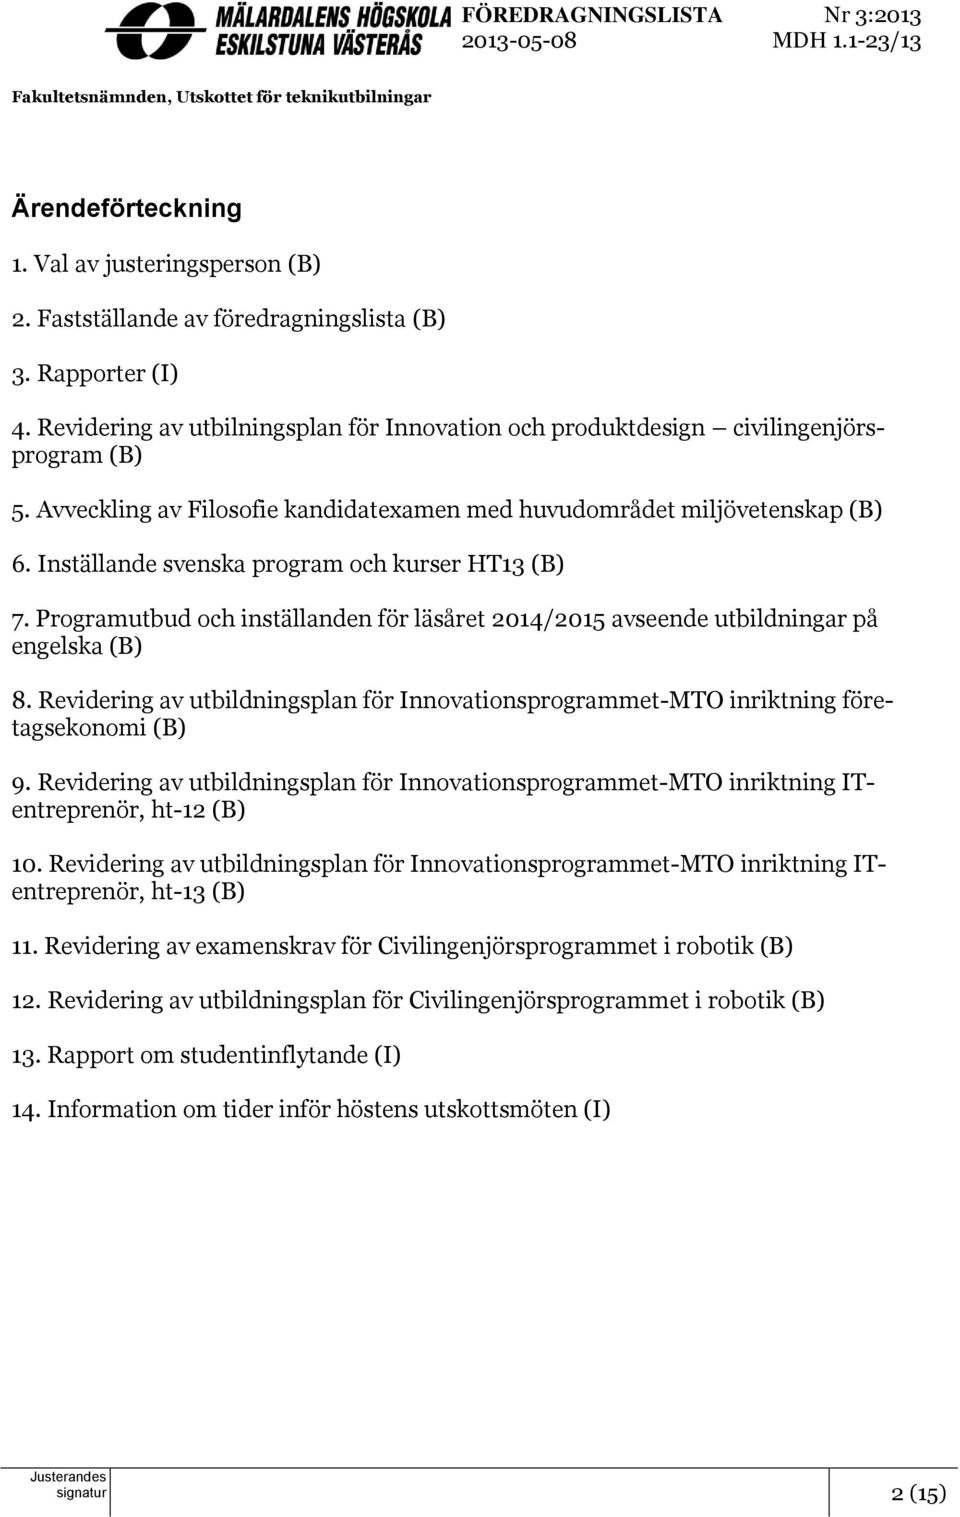 Inställande svenska program och kurser HT13 (B) 7. Programutbud och inställanden för läsåret 2014/2015 avseende utbildningar på engelska (B) 8.